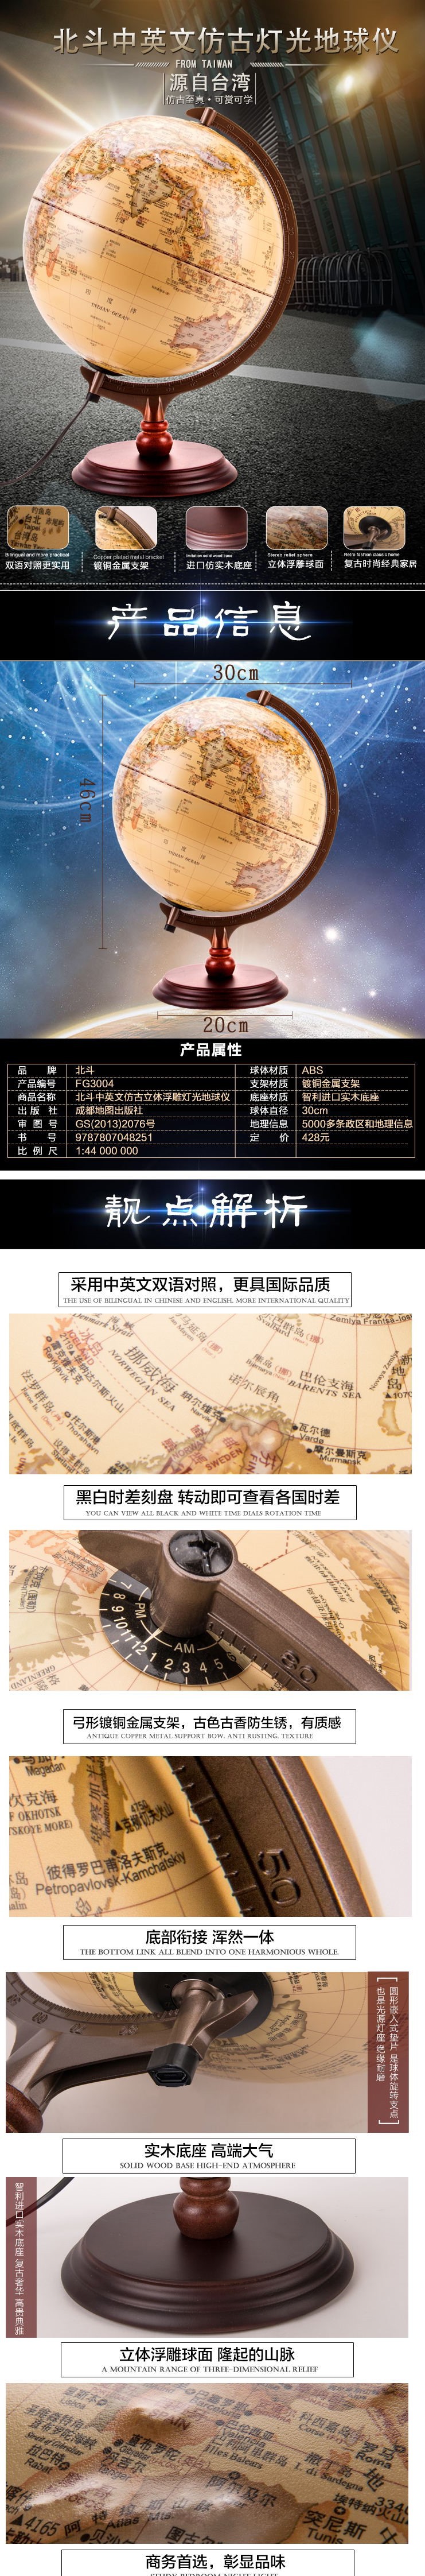 米乐|米乐·M6(China)官方网站_首页7709